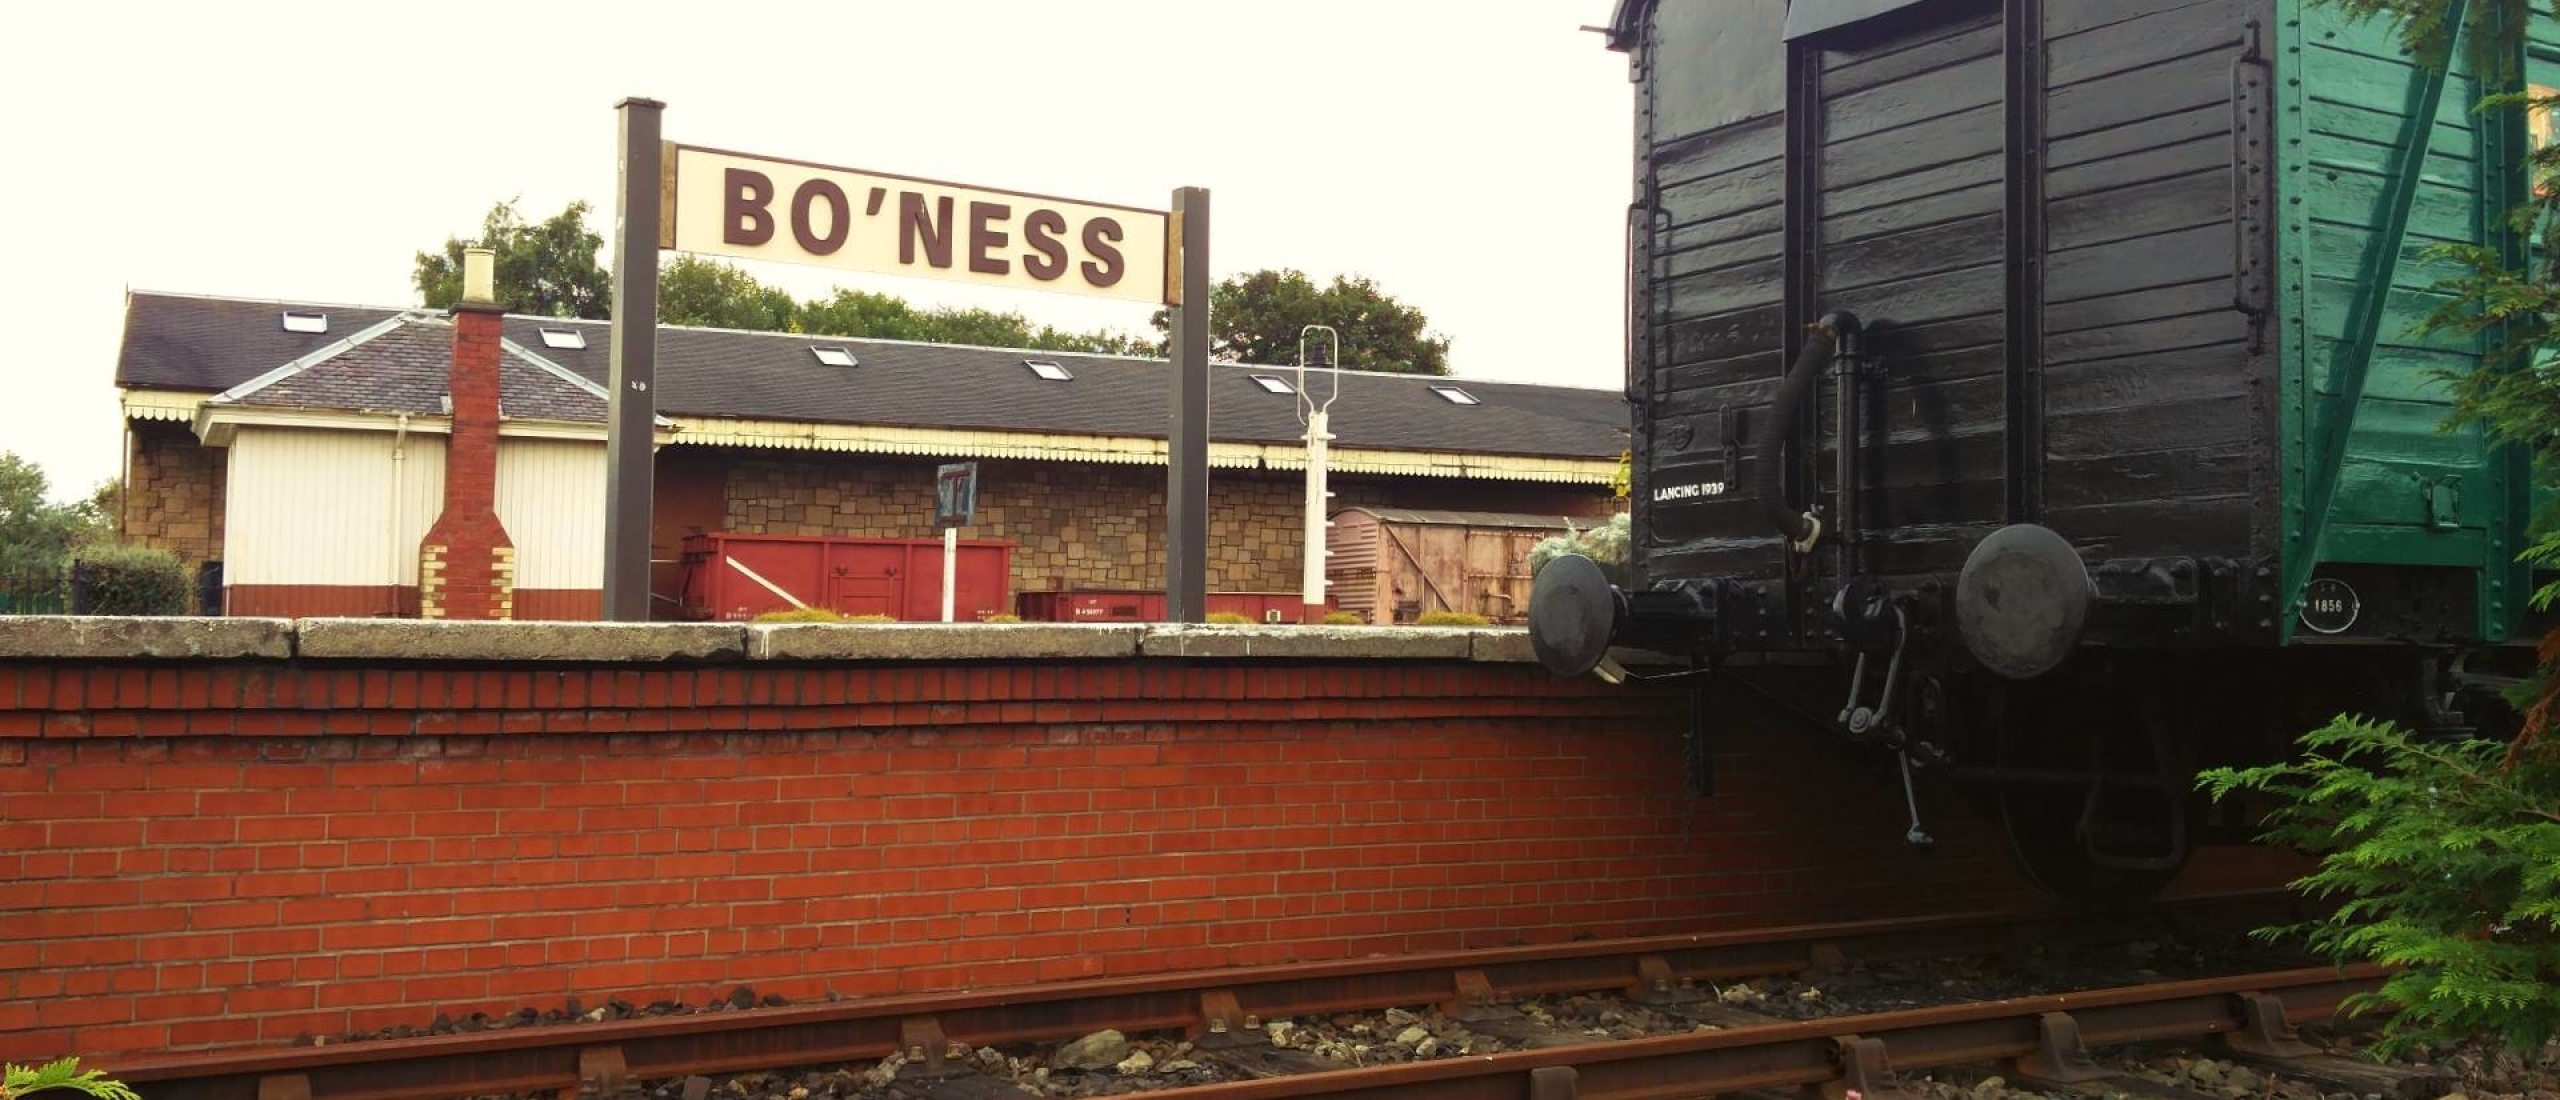 Bo’ness & Kinneil Railway, op bezoek bij Thomas en Percy